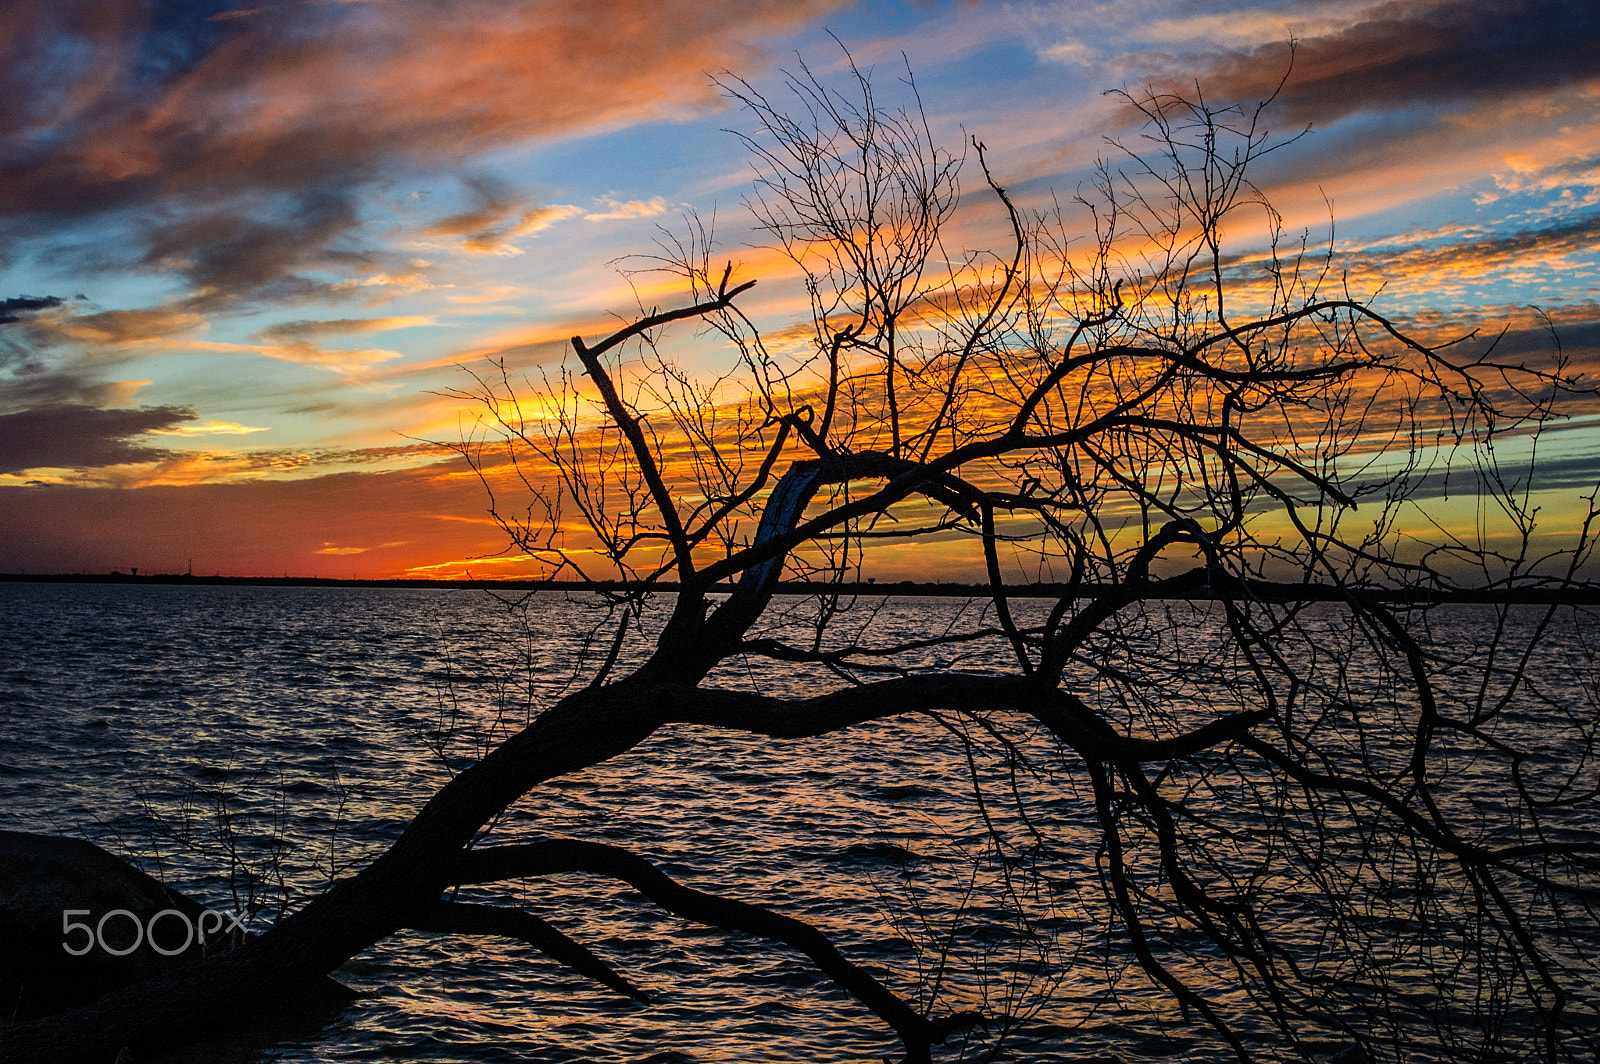 Nikon D70s + AF Zoom-Nikkor 28-100mm f/3.5-5.6G sample photo. Sunset over joe pool lake photography